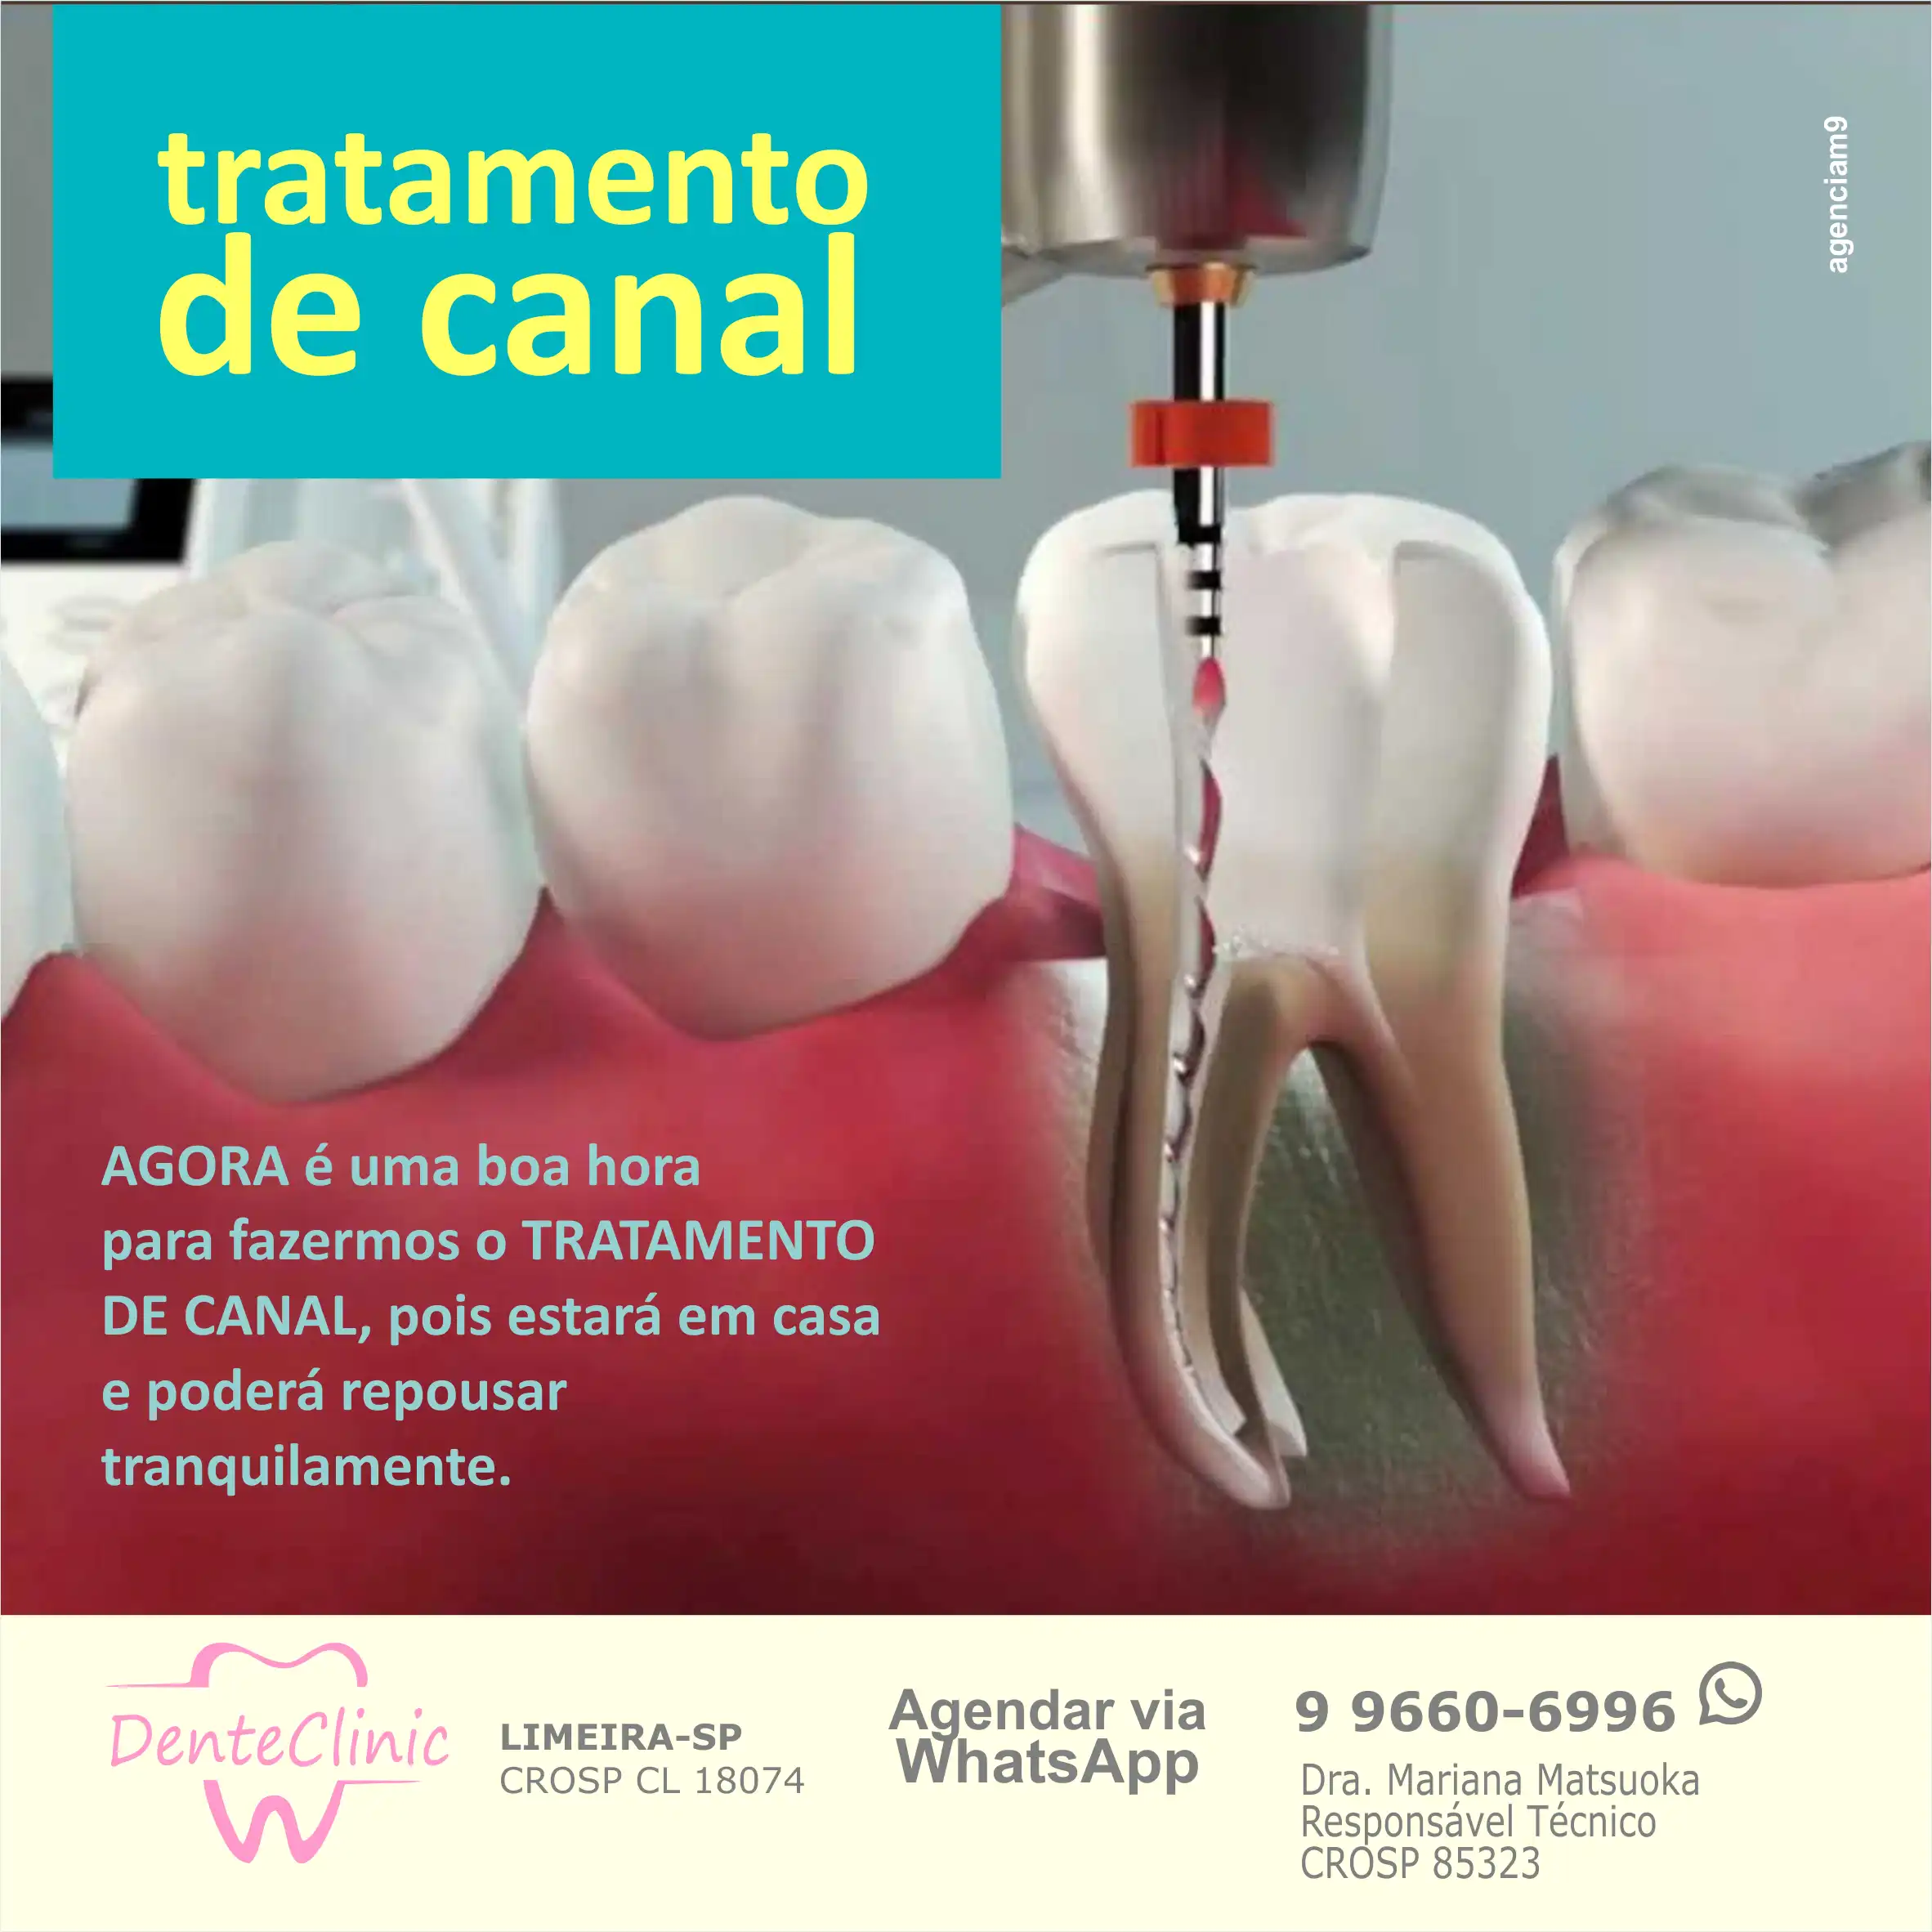 
Propaganda Dentista Tratamento de Canal



